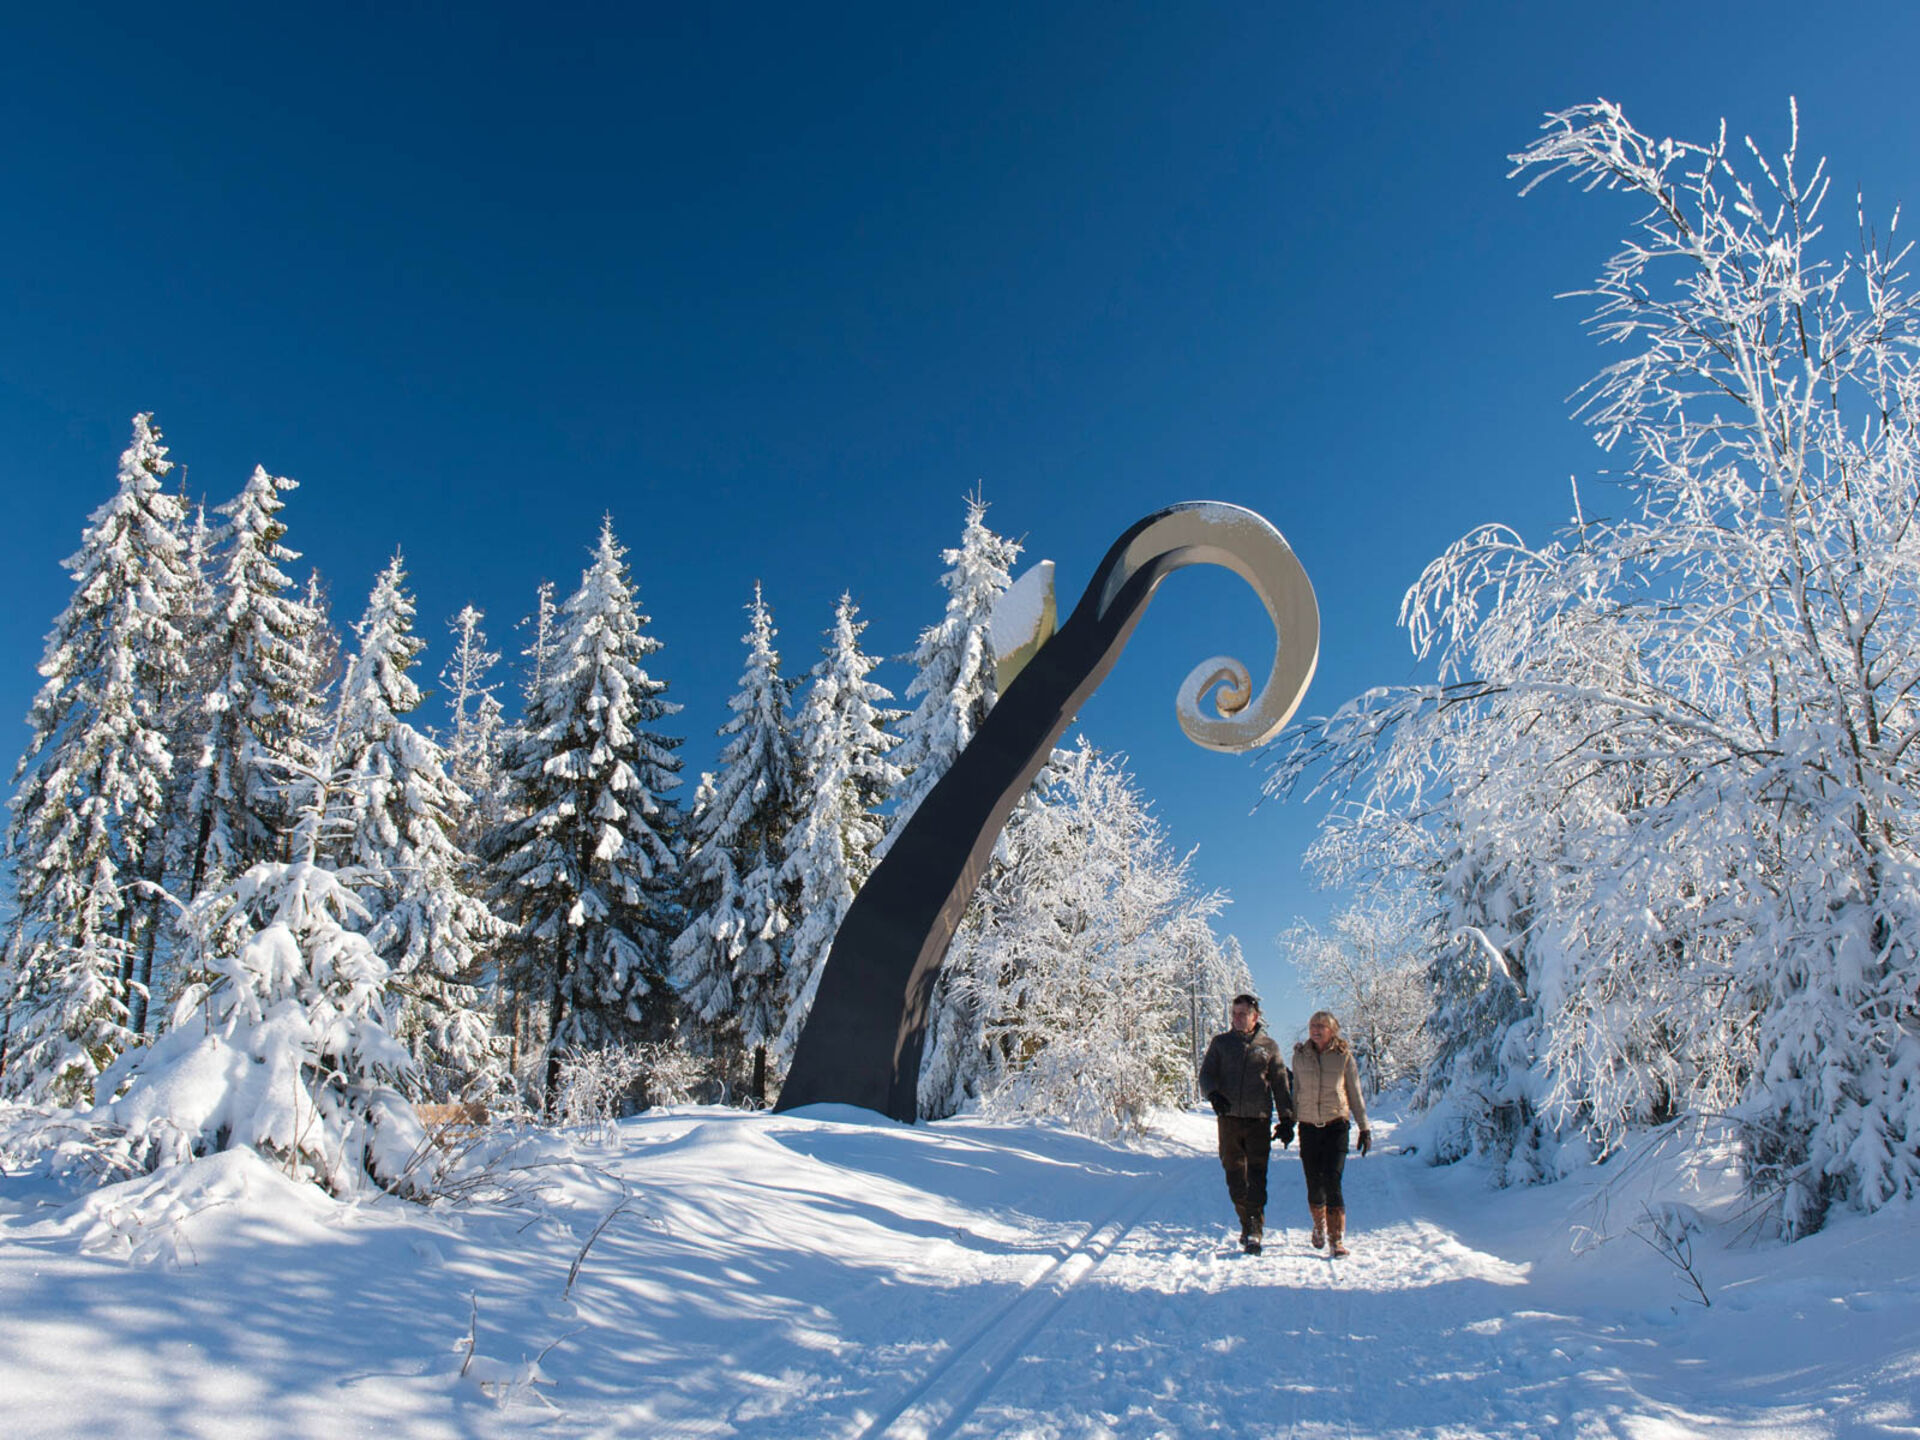 Winter hiking at the WaldSkulpturenWeg near Schanze in Sauerland